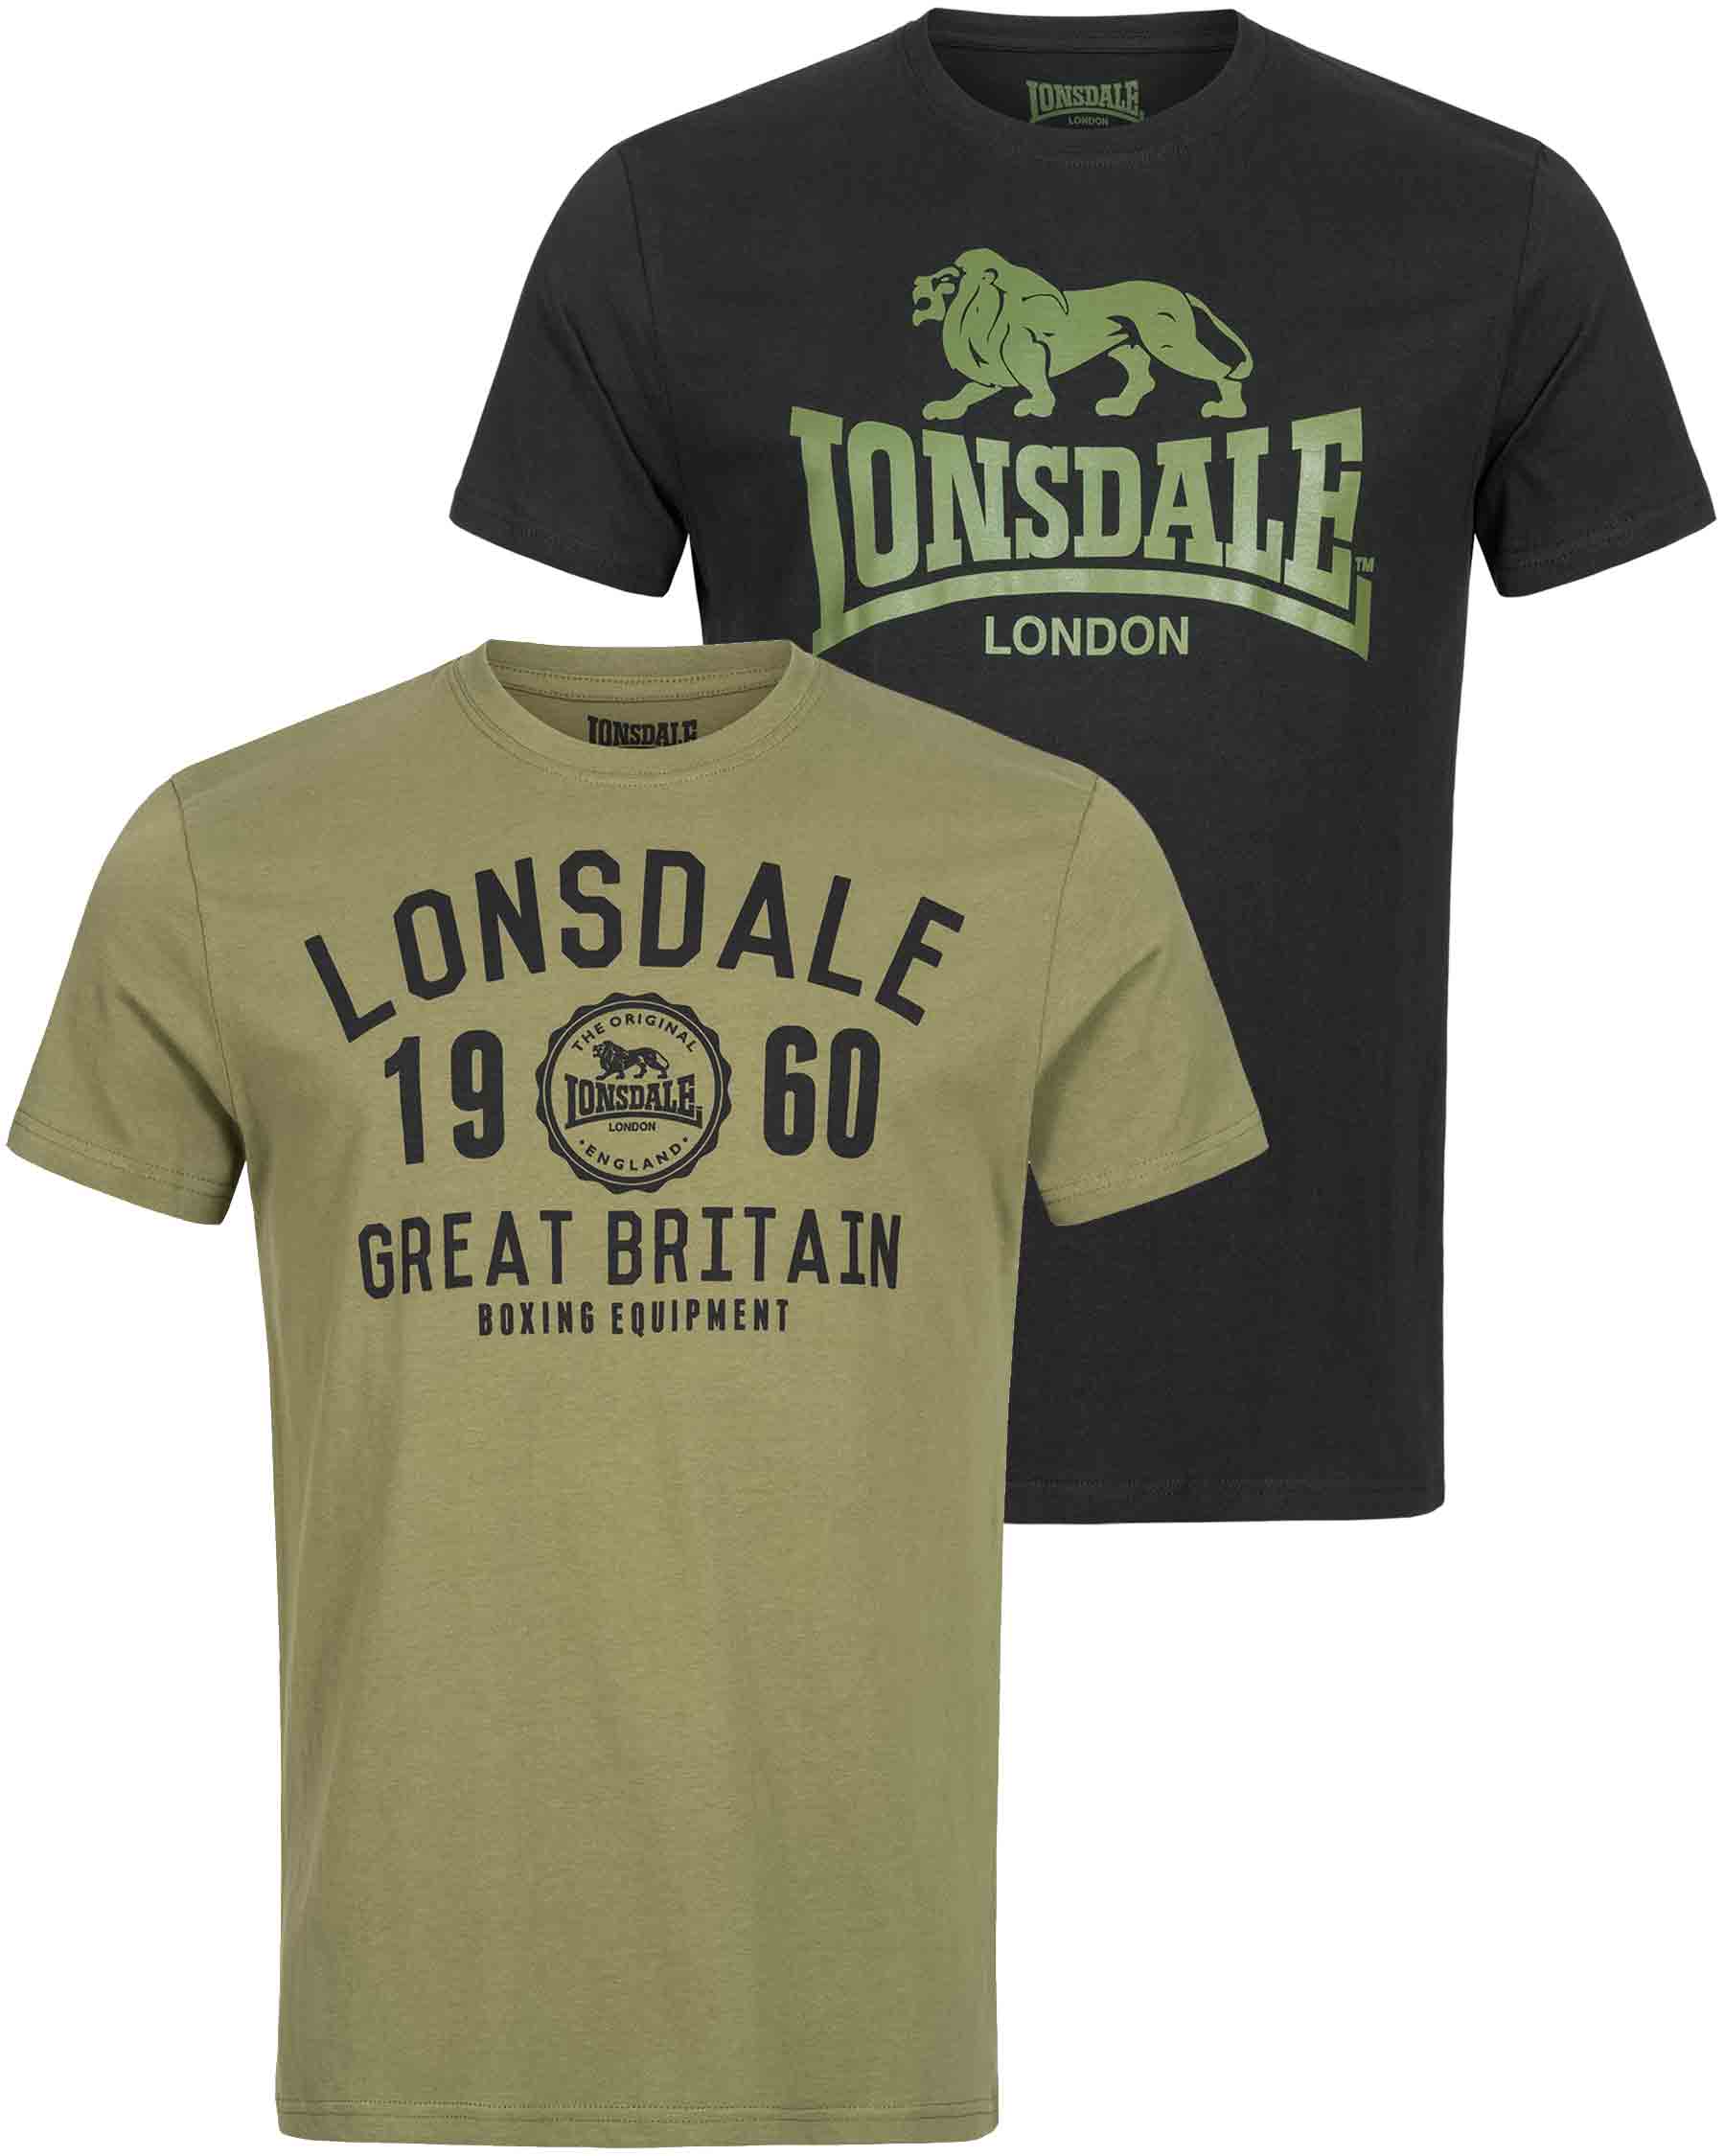 Presenter Ligegyldighed Forbandet Lonsdale T-Shirt Doublepack Bangor - Mens T-Shirt - Lonsdale London